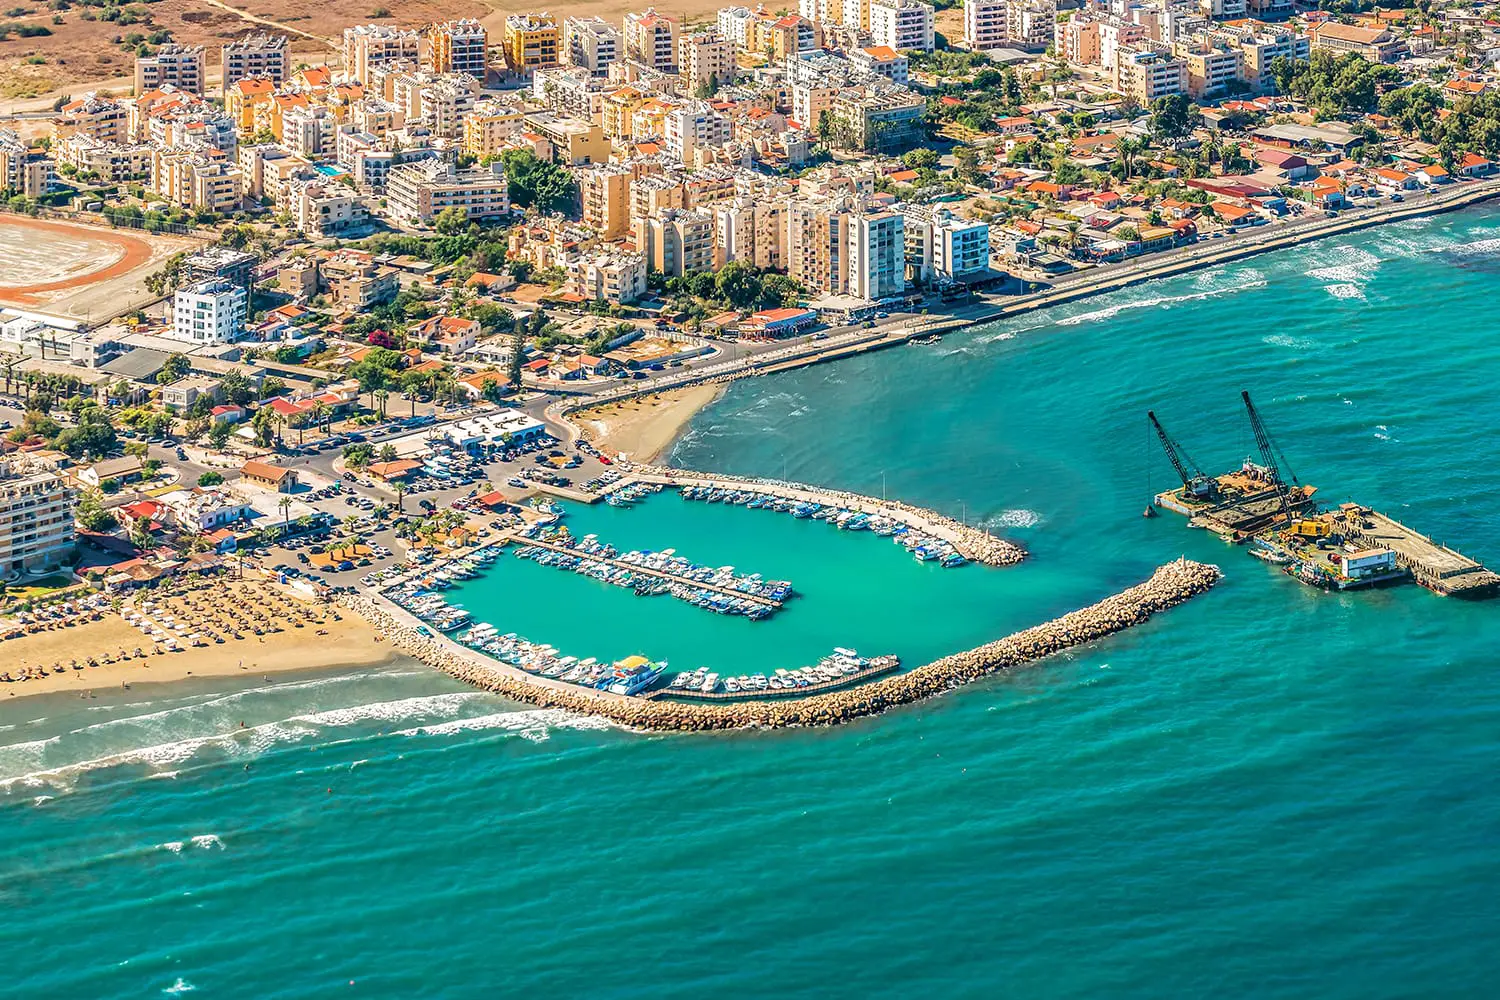 Θαλάσσιο λιμάνι της Λάρνακας, Κύπρος. Θέα από το αεροσκάφος στην ακτογραμμή, τις παραλίες, το λιμάνι και την αρχιτεκτονική της πόλης της Λάρνακας.